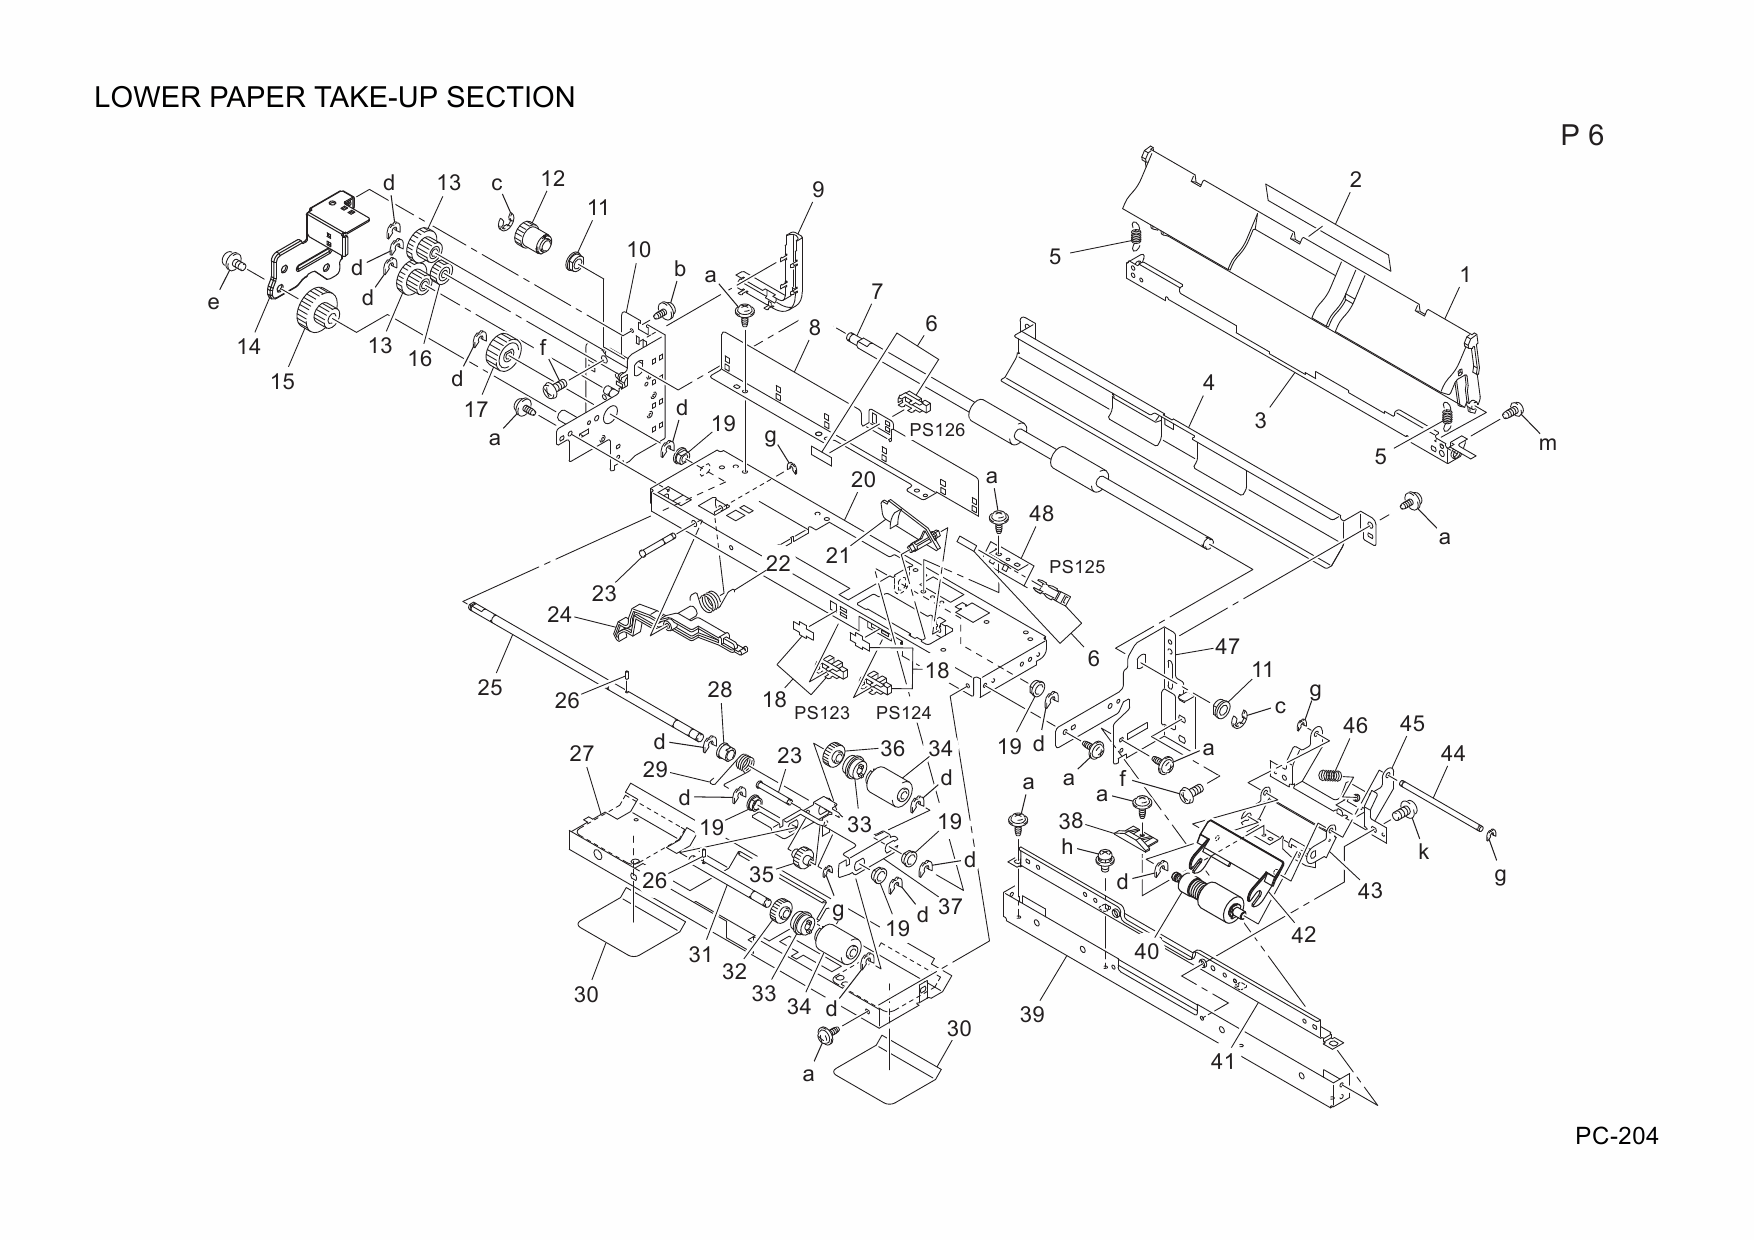 Konica-Minolta Options PC-204 A093002 Parts Manual-5